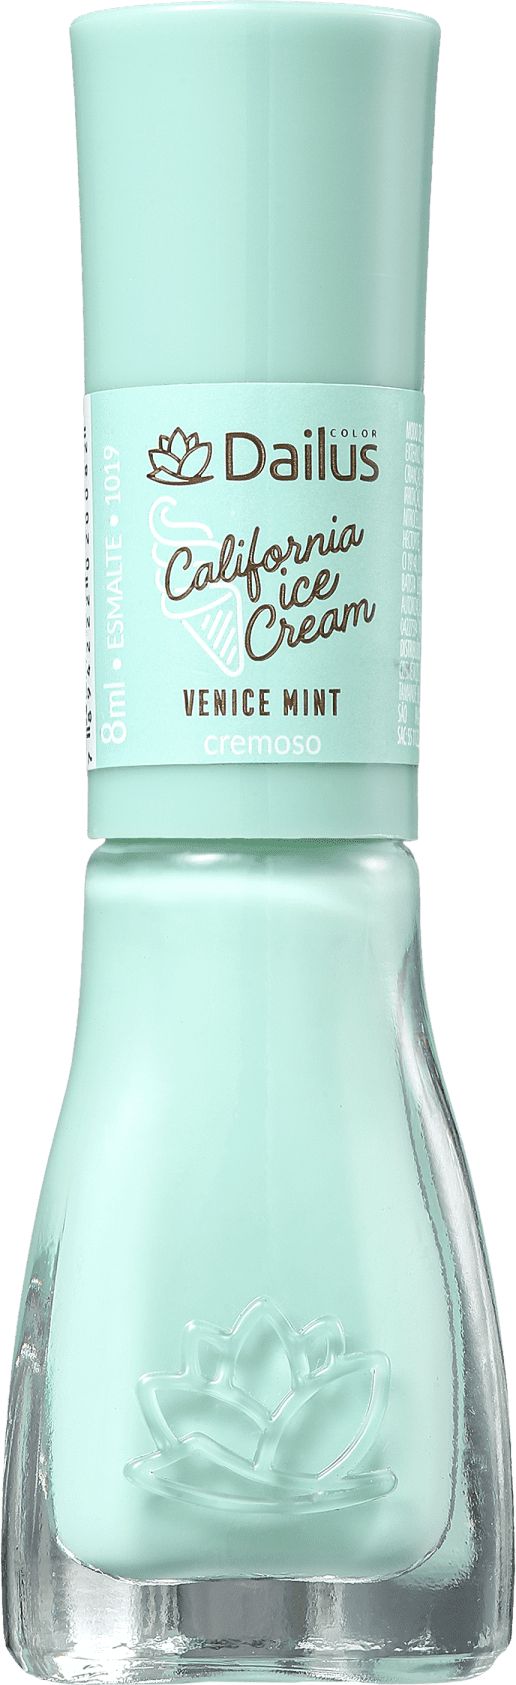 Esmalte Dailus Vegan Cremoso Venice Mint - Loja da Bela |Encontre os  melhores produtos de beleza e maior variedade de marcas